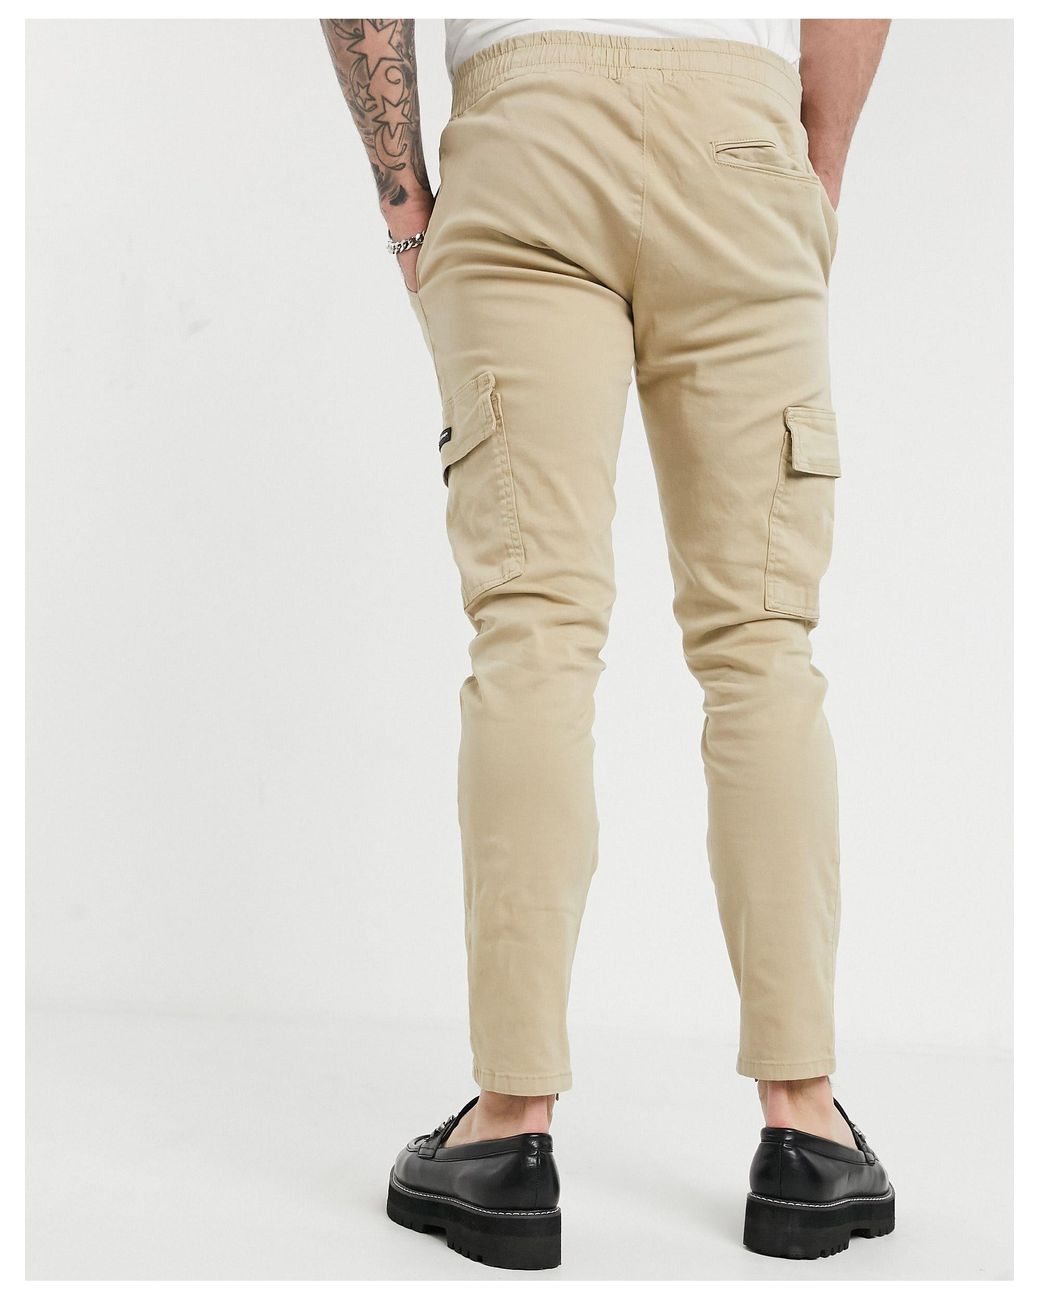 Men Cargo Combat Denim Pants Skinny Jeans Casual Slim Fit Trousers | Fruugo  KR